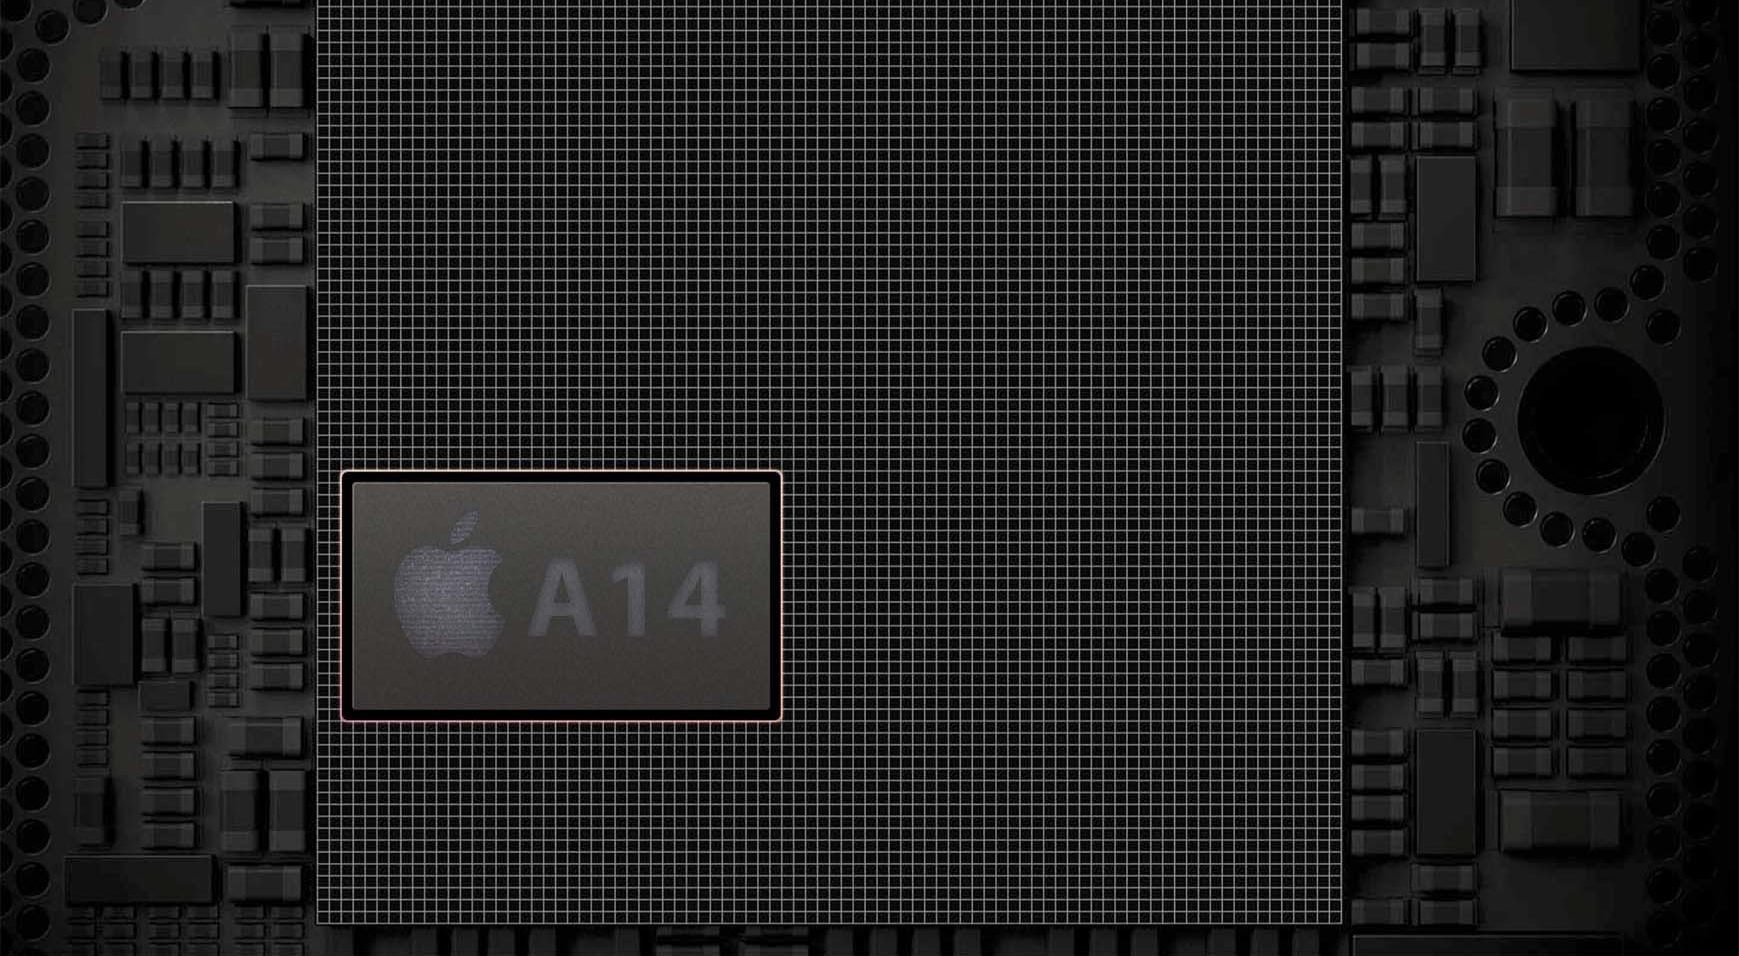 Il chip A14 per iPhone 12 non dovrebbe avere ritardi